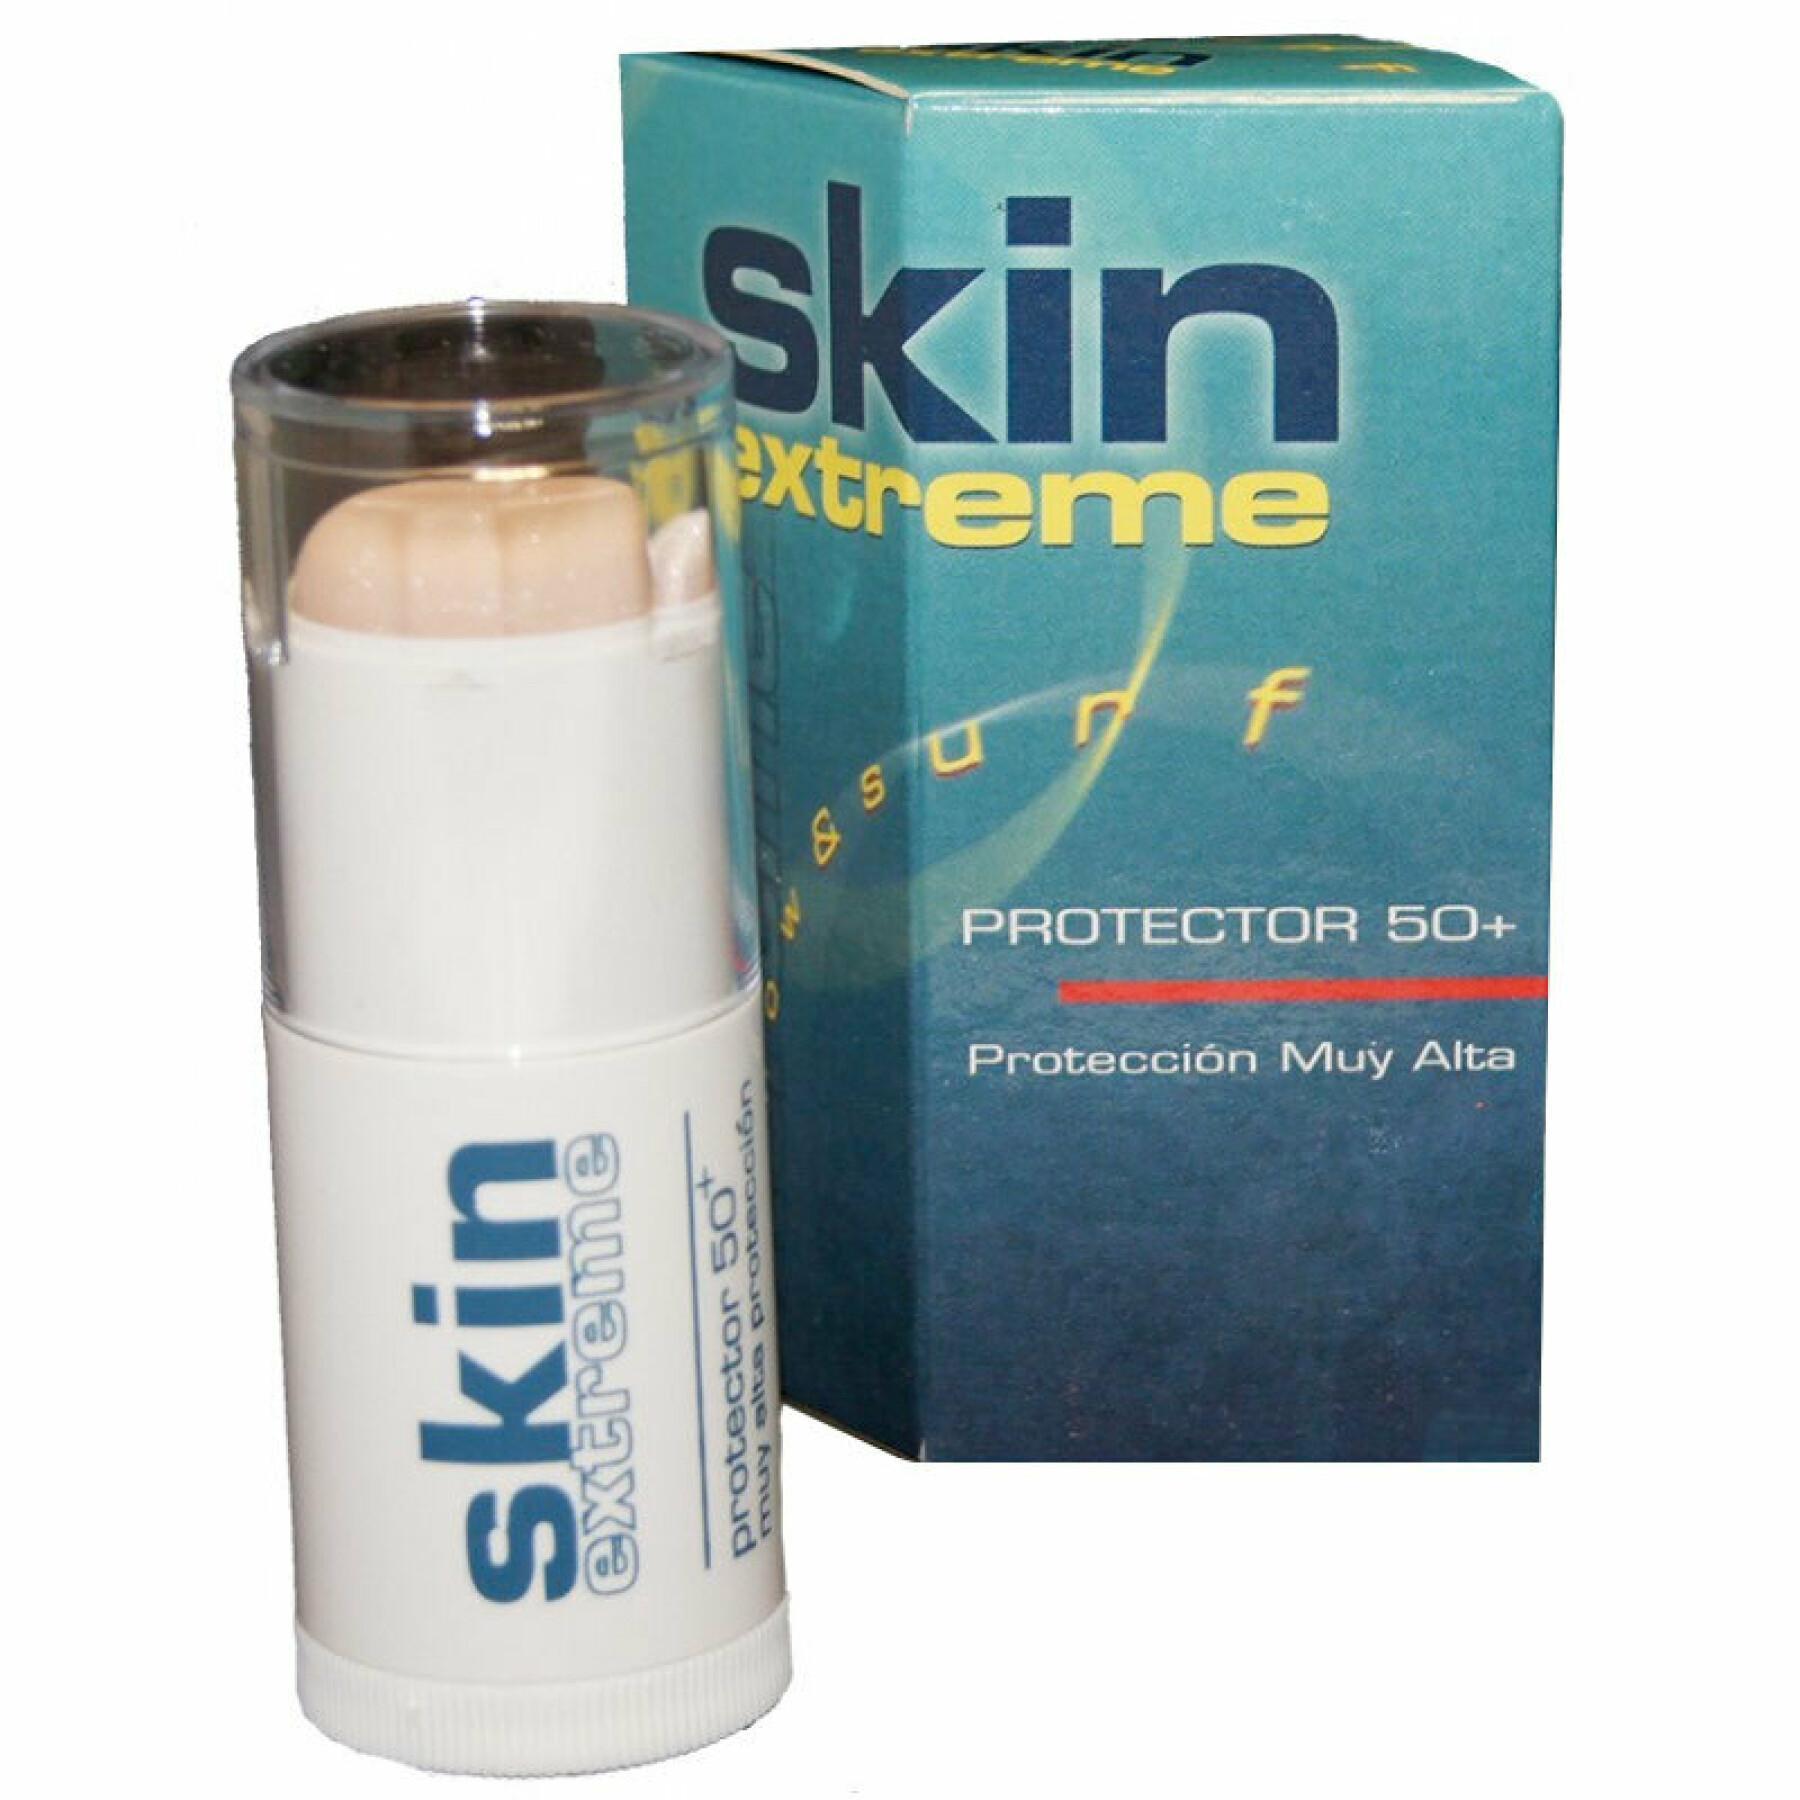 Protezione solare Skin Xtreme SPF 50+ 30 ml